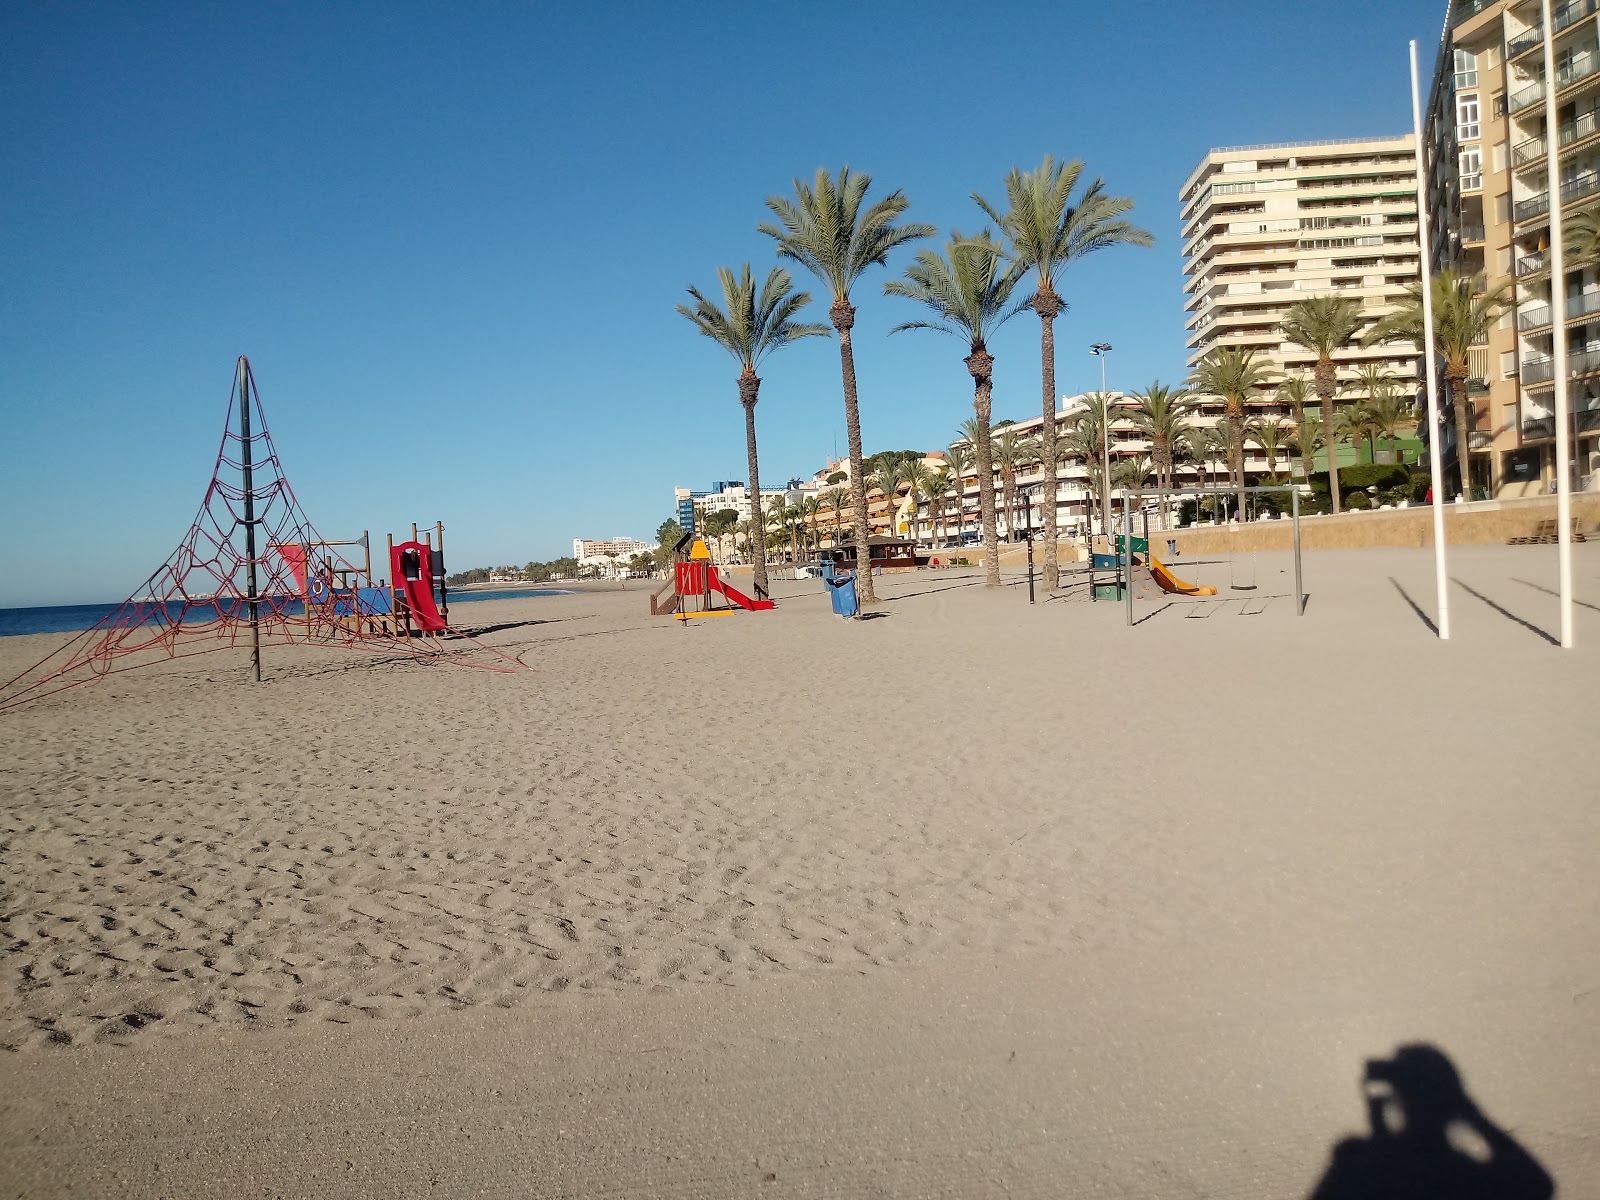 Playa Aguadulce'in fotoğrafı imkanlar alanı